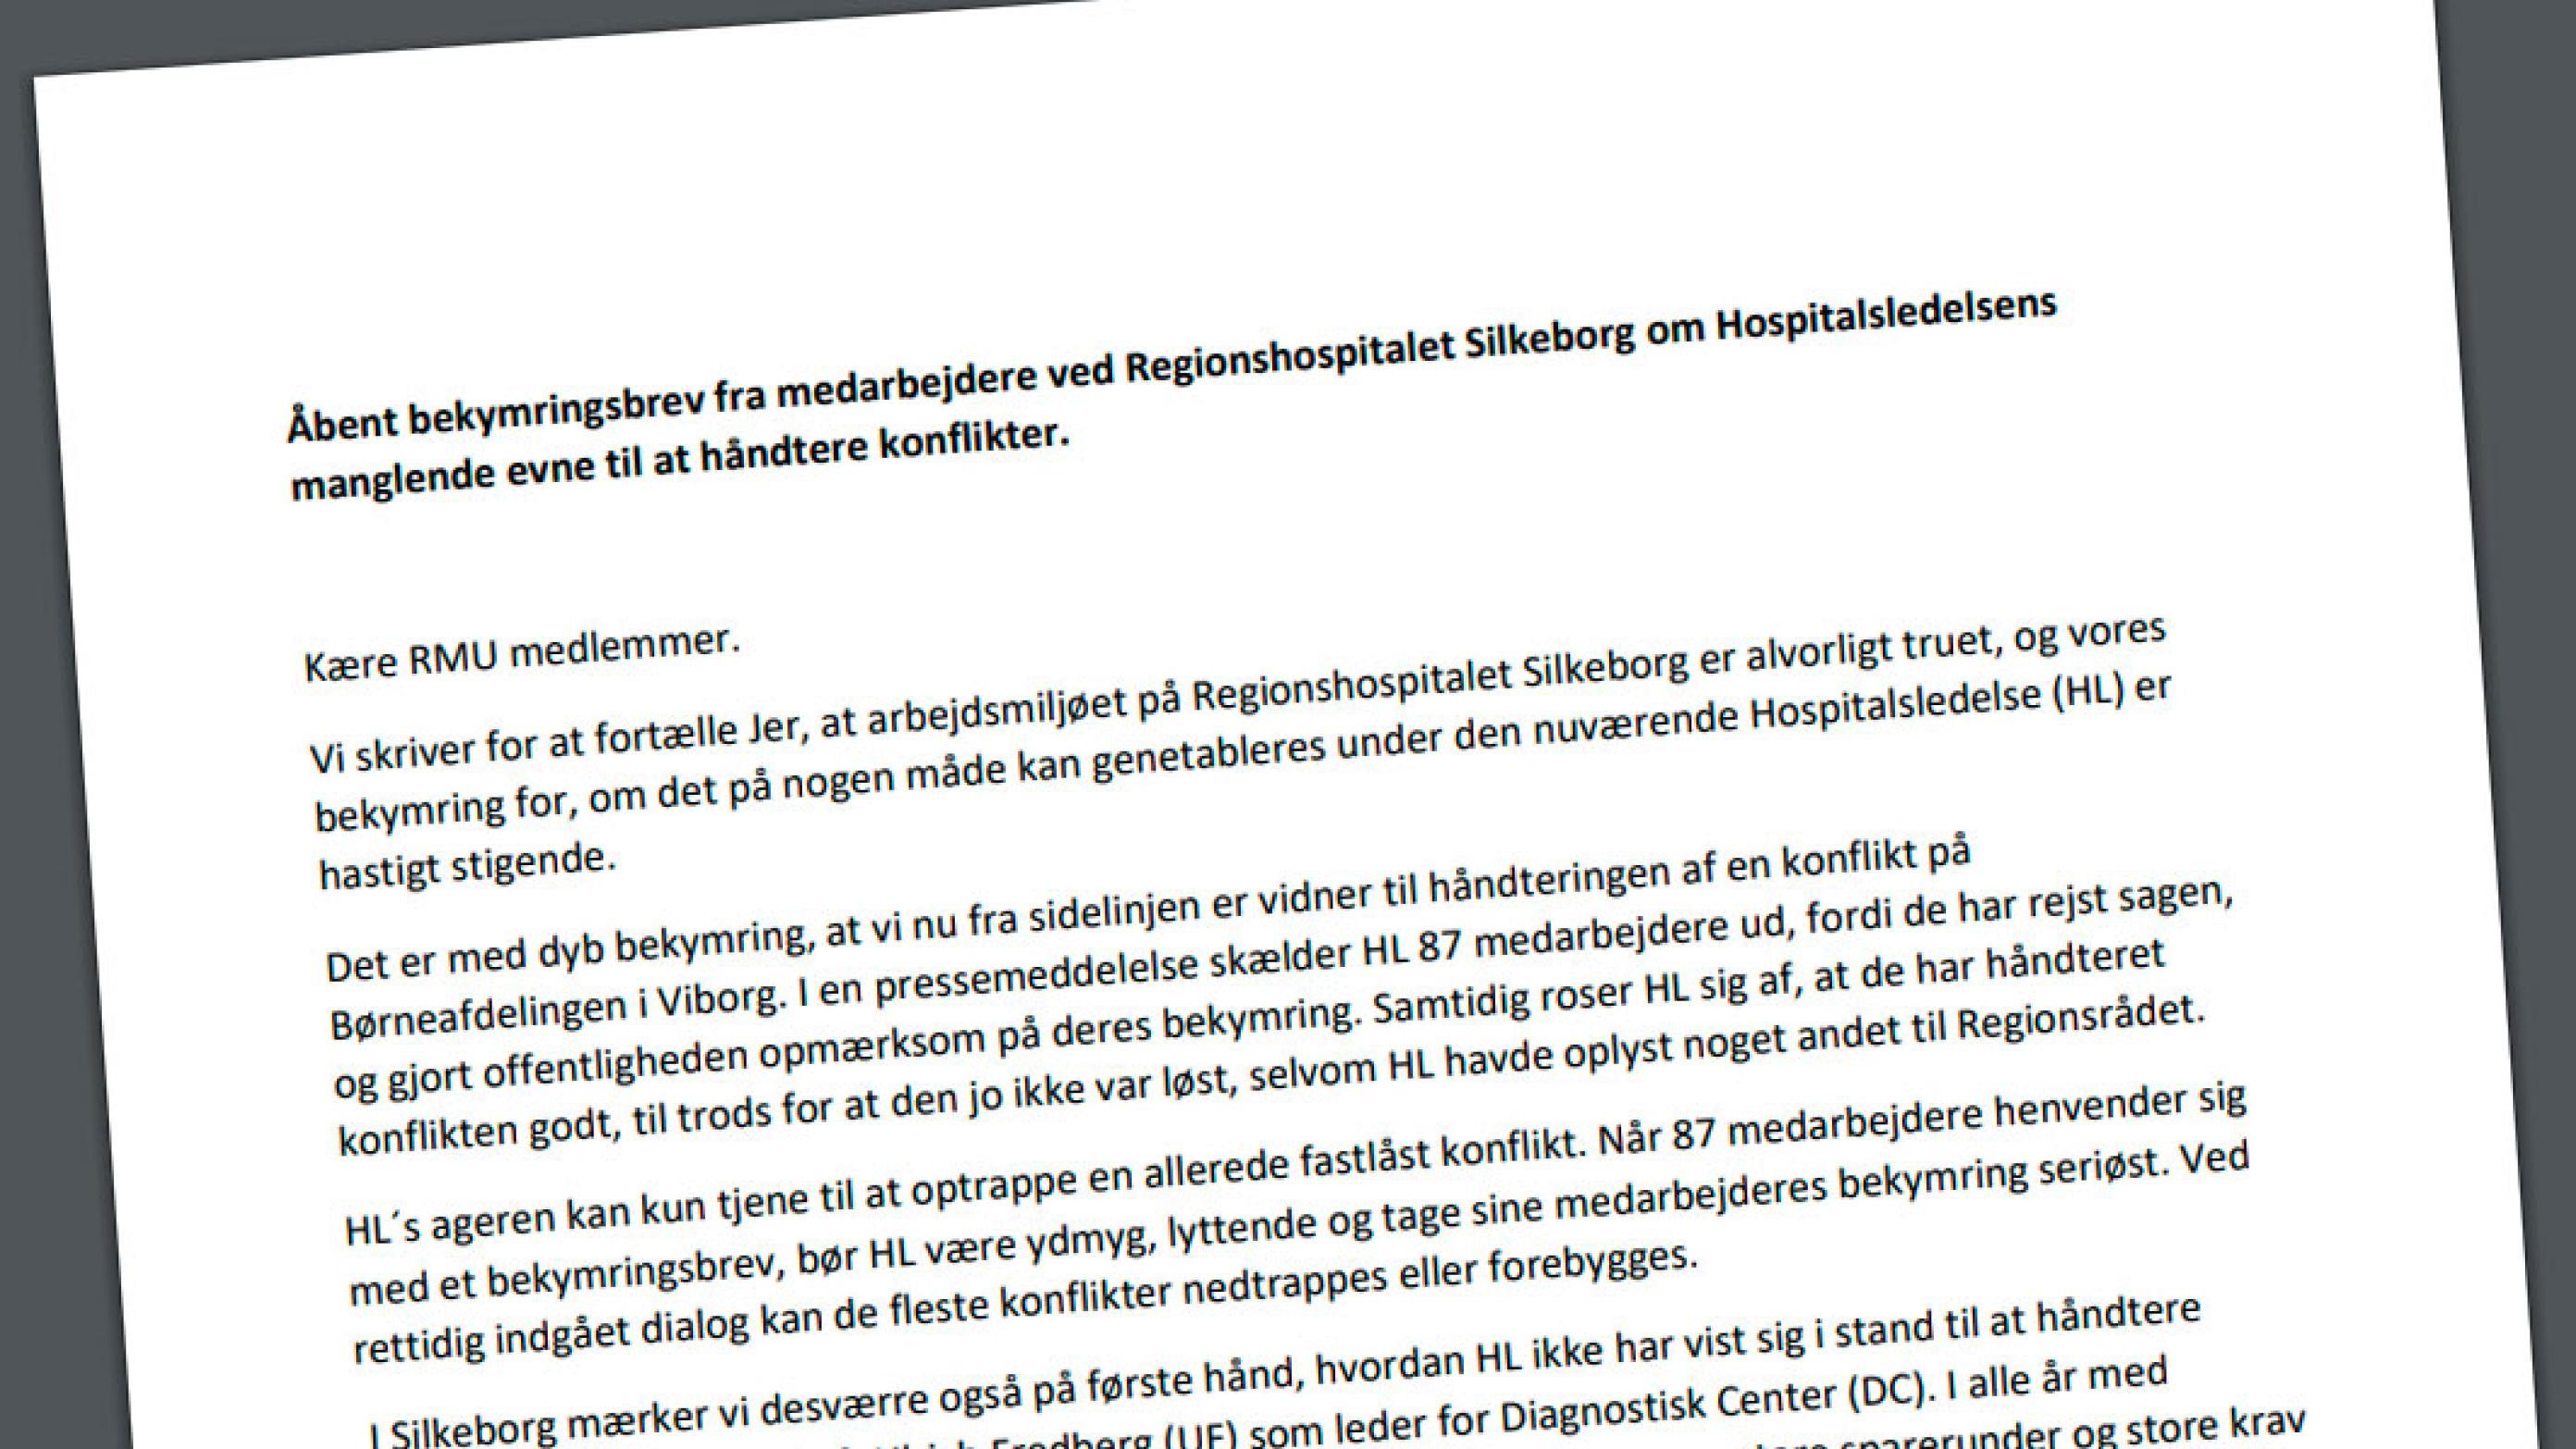 Brevet er sendt af 220 medarbejdere fra Regionshospitalet Silkeborg.